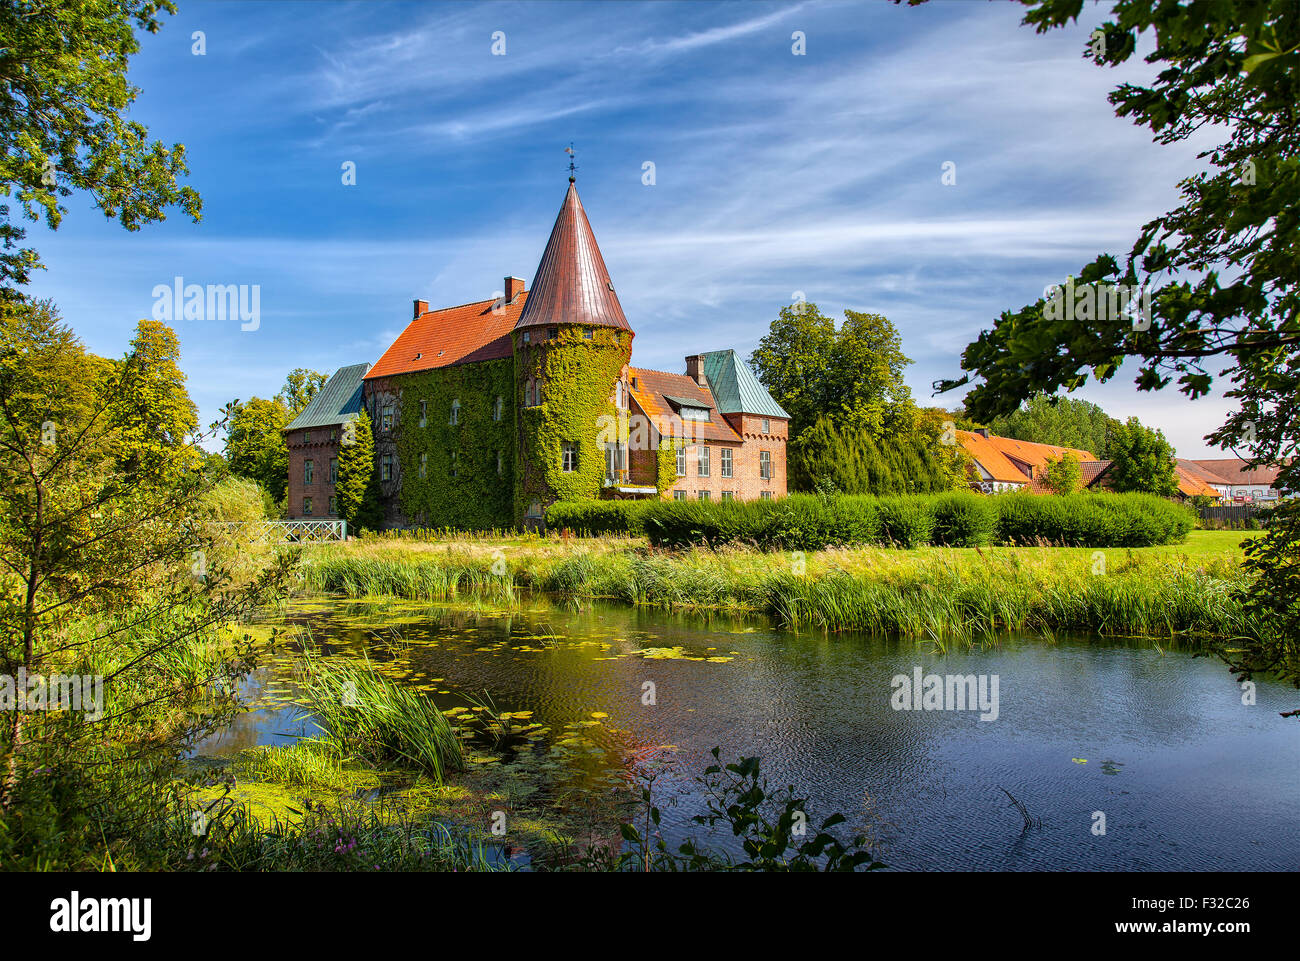 Bild von Ortofta Burg mit Wassergraben und öffentliche Gärten. Scania, Schweden. Stockfoto